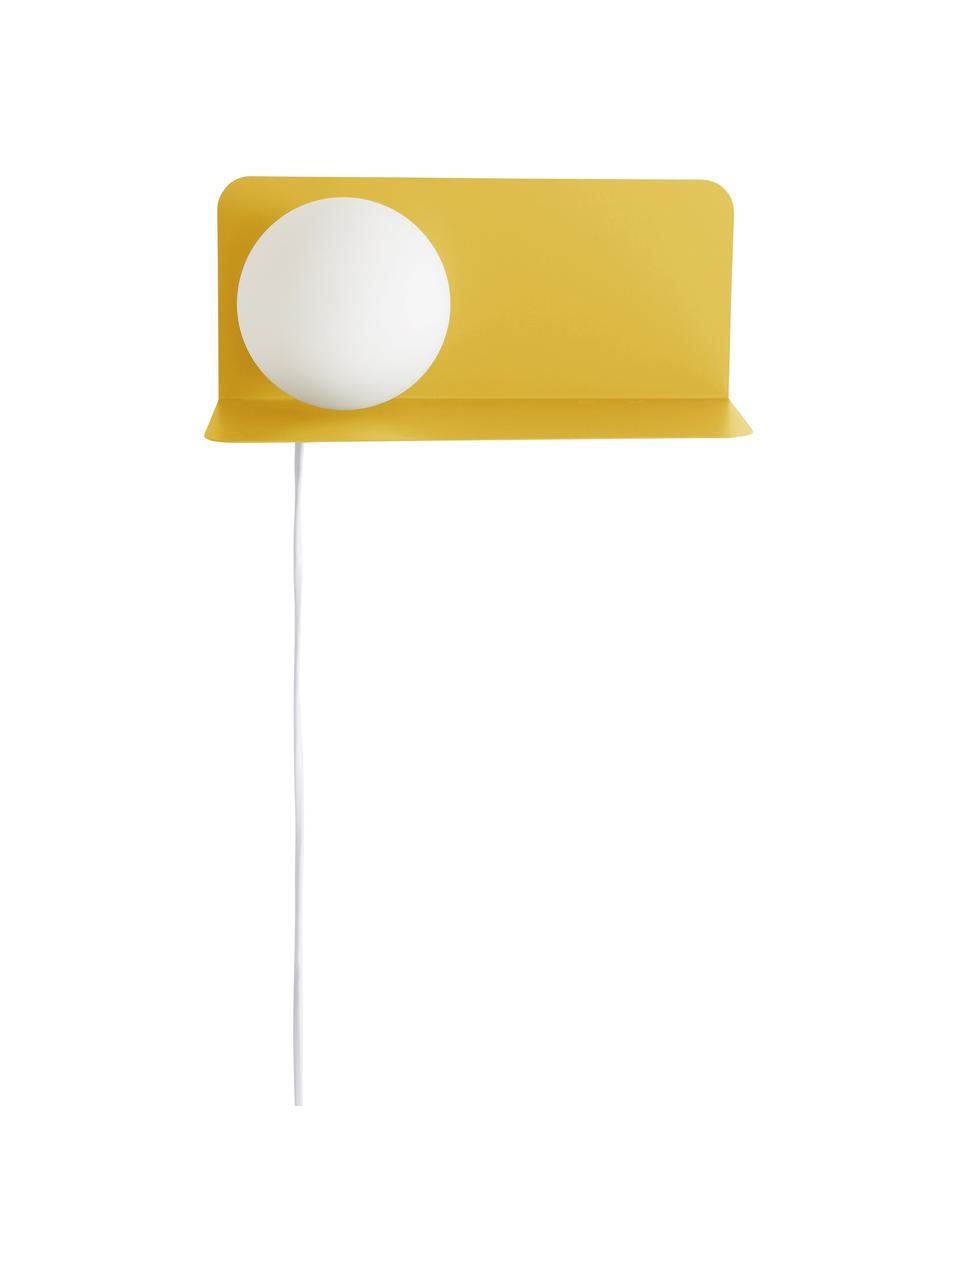 Nástěnné svítidlo Walliee, Kov, Žlutá, H 15 cm, V 13 cm